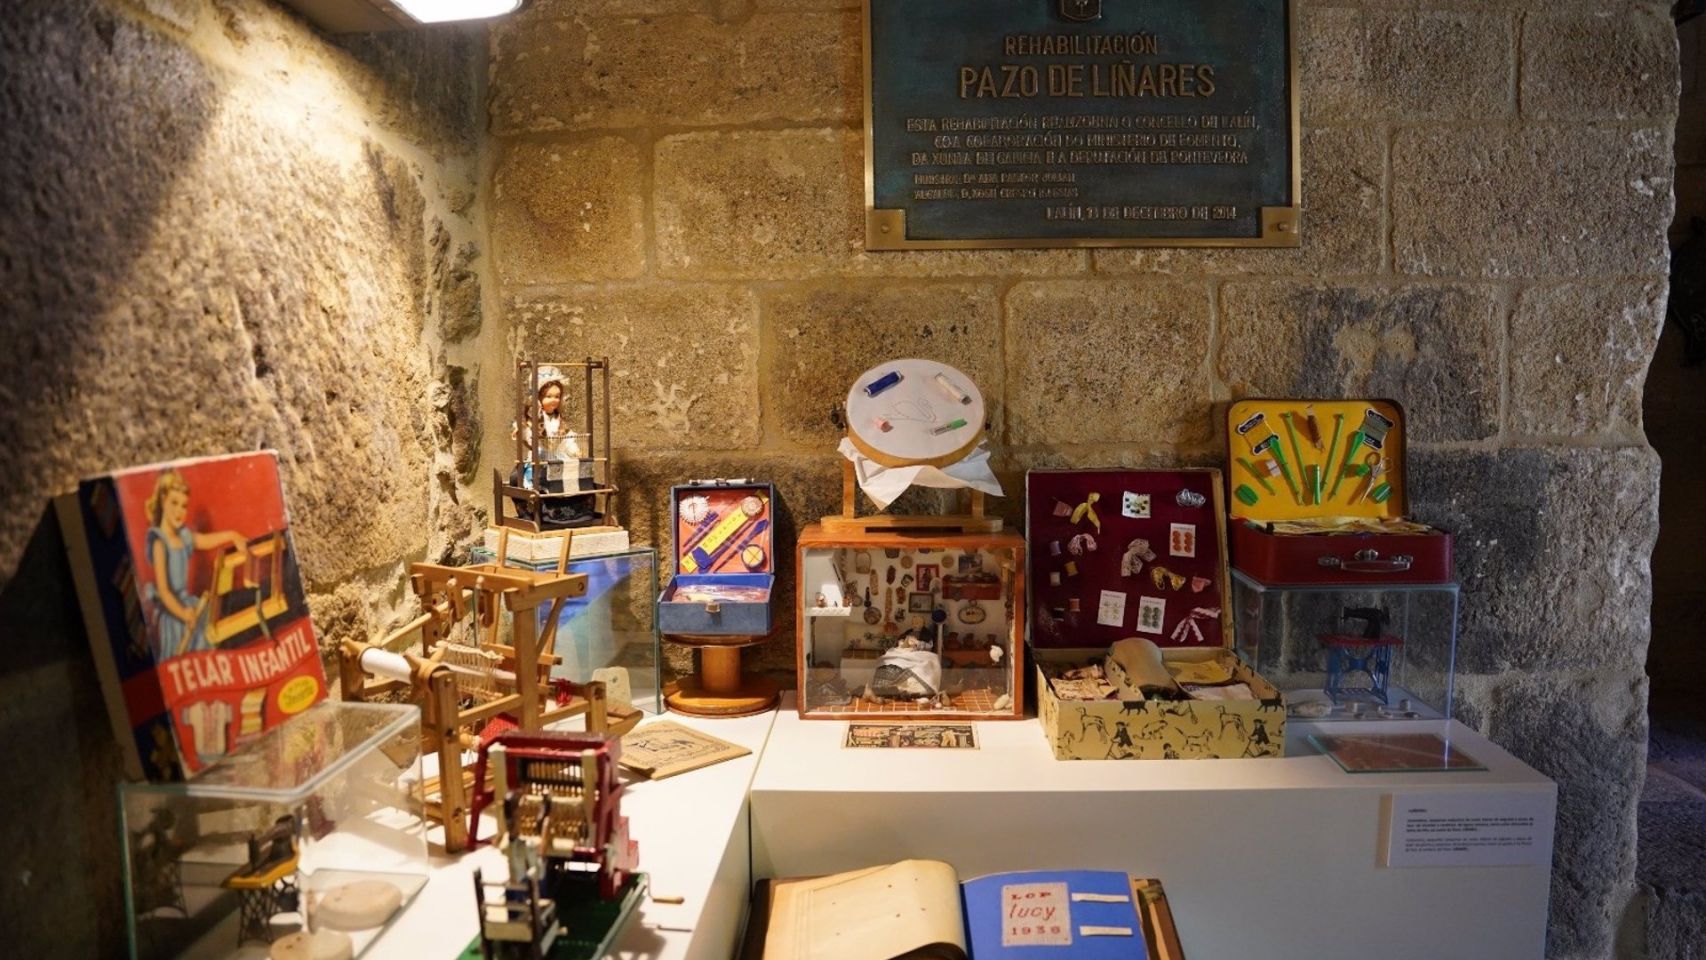 El Museo del Juguete, en el Pazo de Liñares de Lalín

